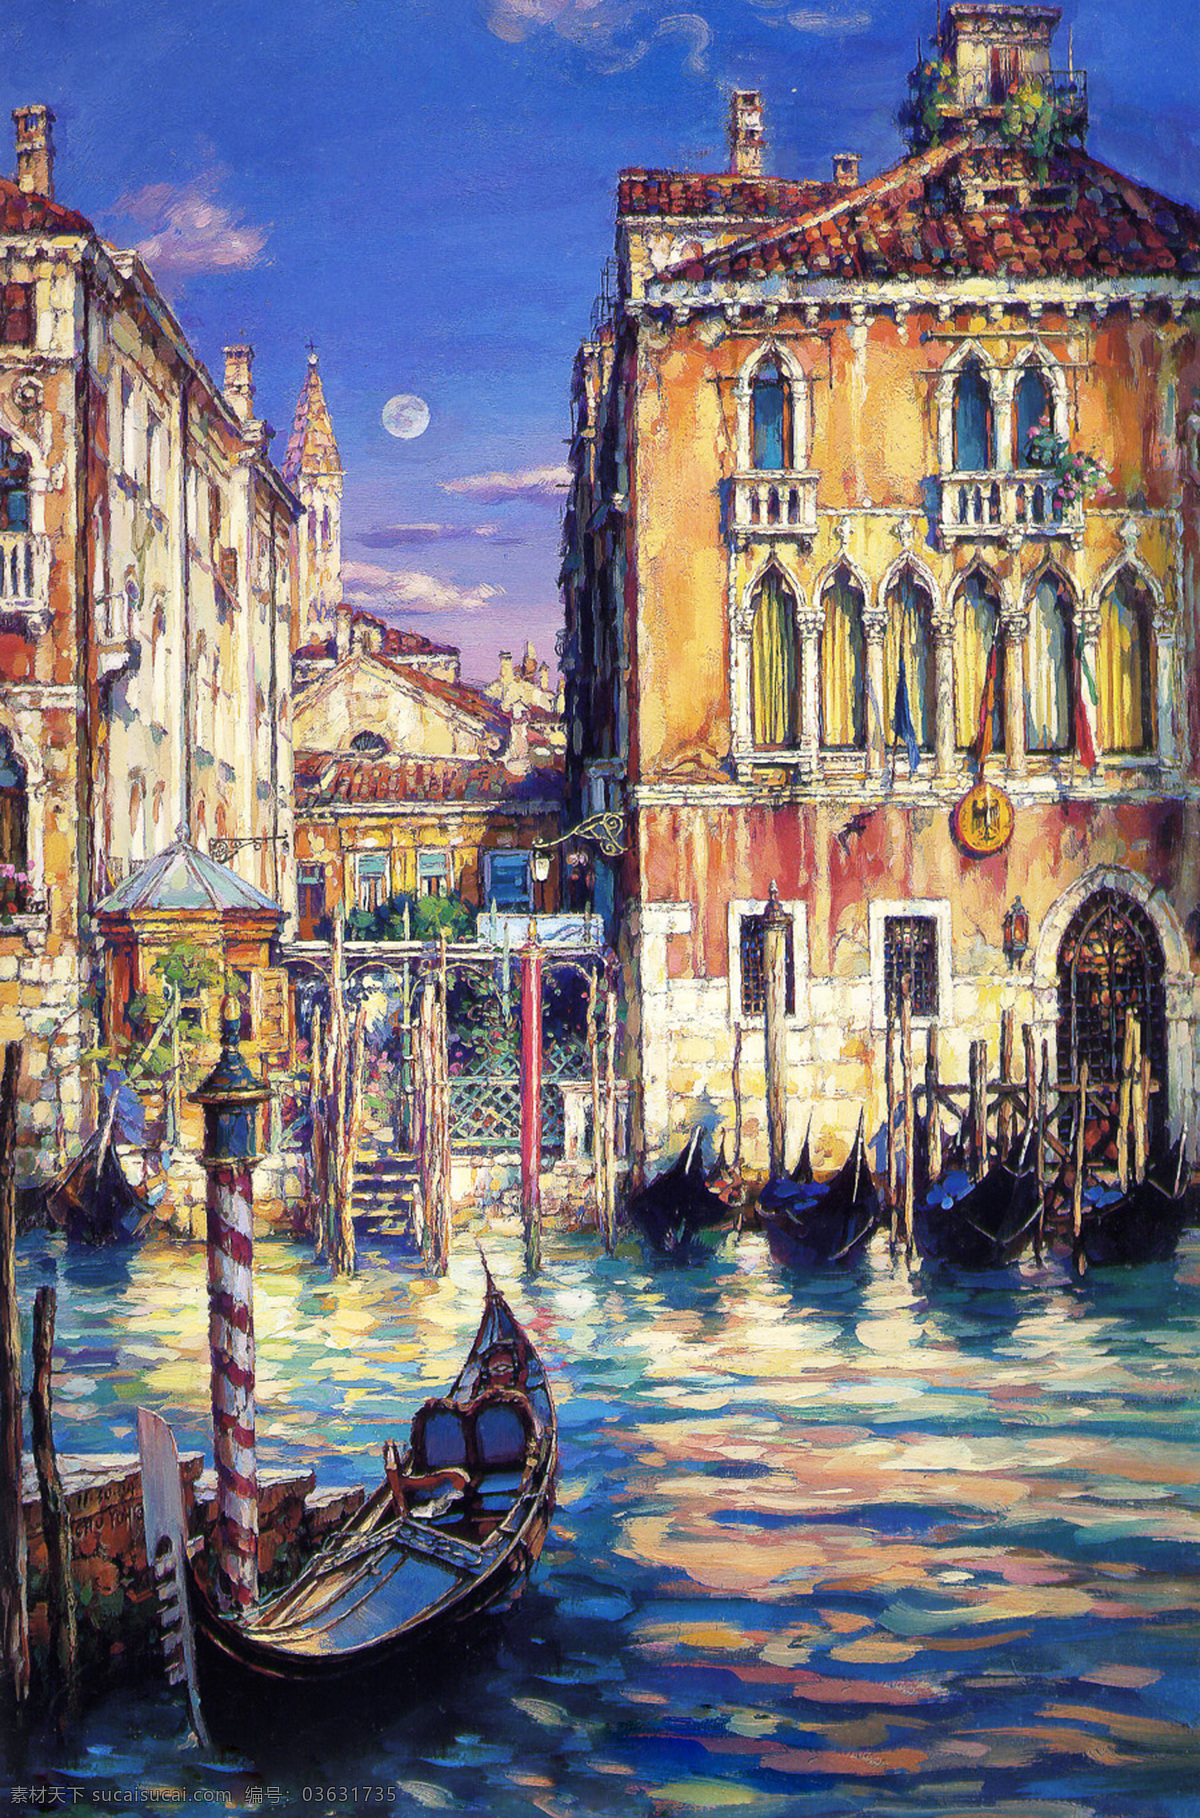 油画威尼斯2 油画 威尼斯 水城威尼斯 威尼斯小船 生活 场景 欧洲水城 小船 月亮 月光 楼房 窗户 人物 绘画书法 文化艺术